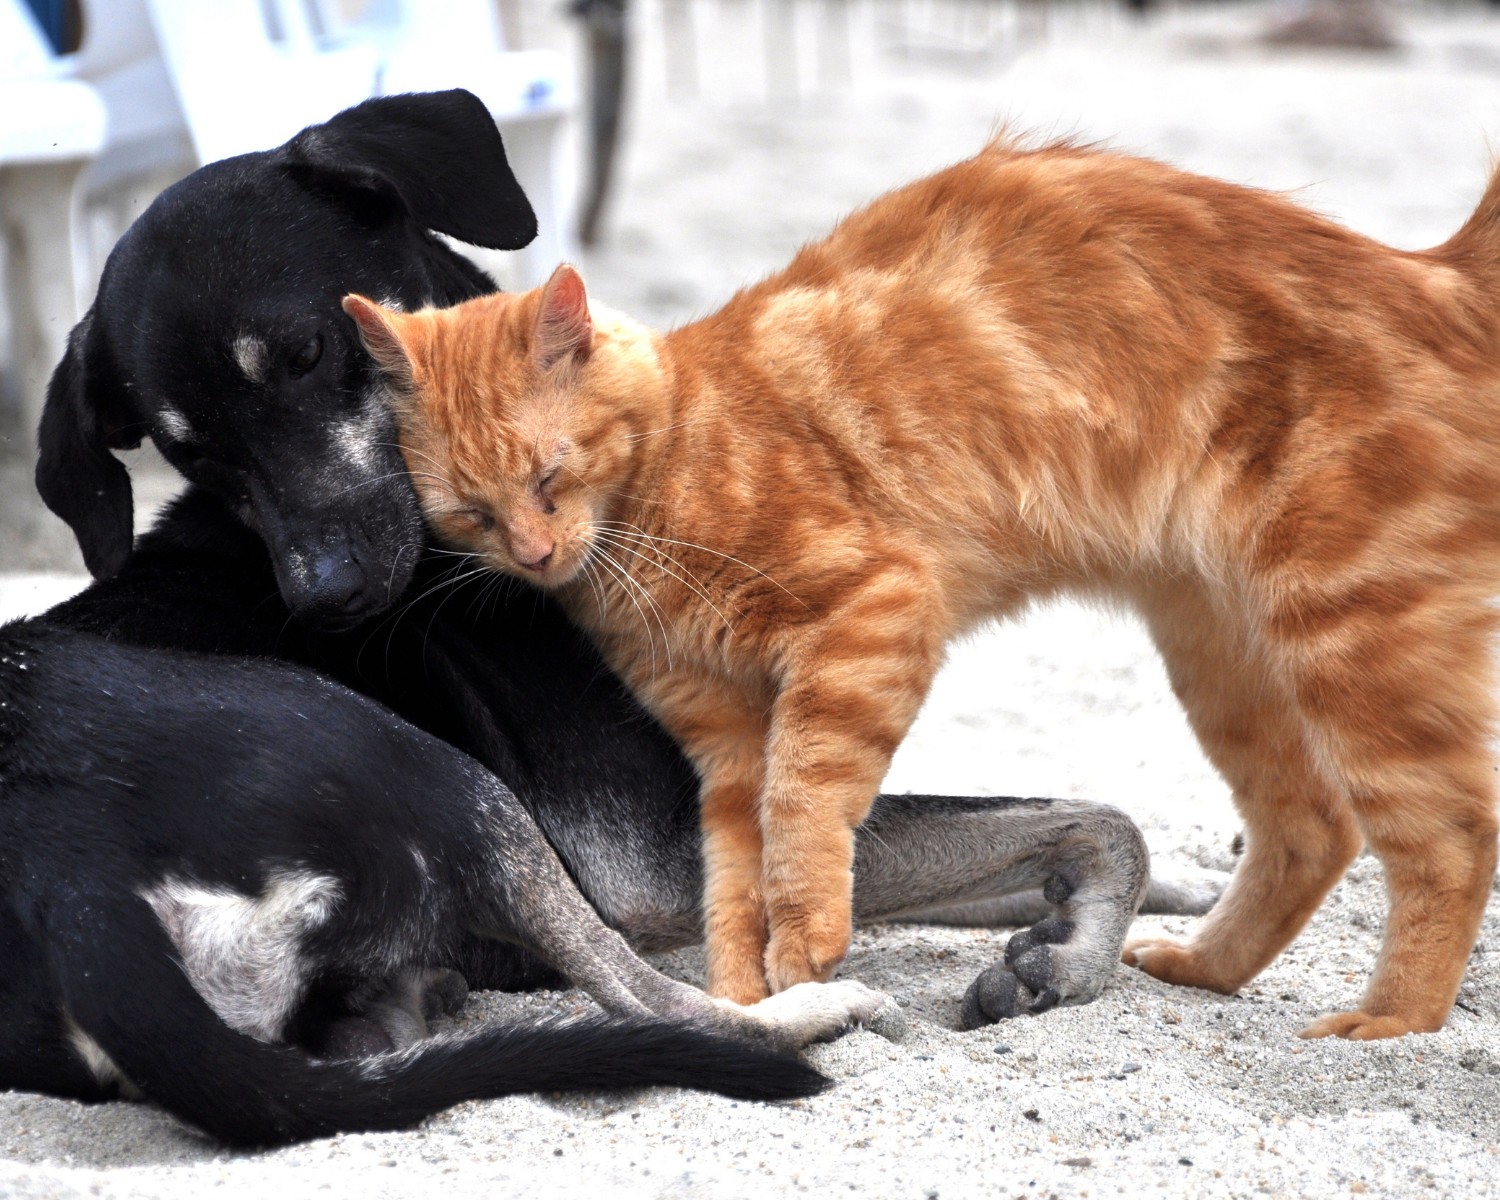 O convívio entre gatos e cachorros pode exigir um pouco mais de paciência dos tutores (Foto: Canva/Creative Commons)